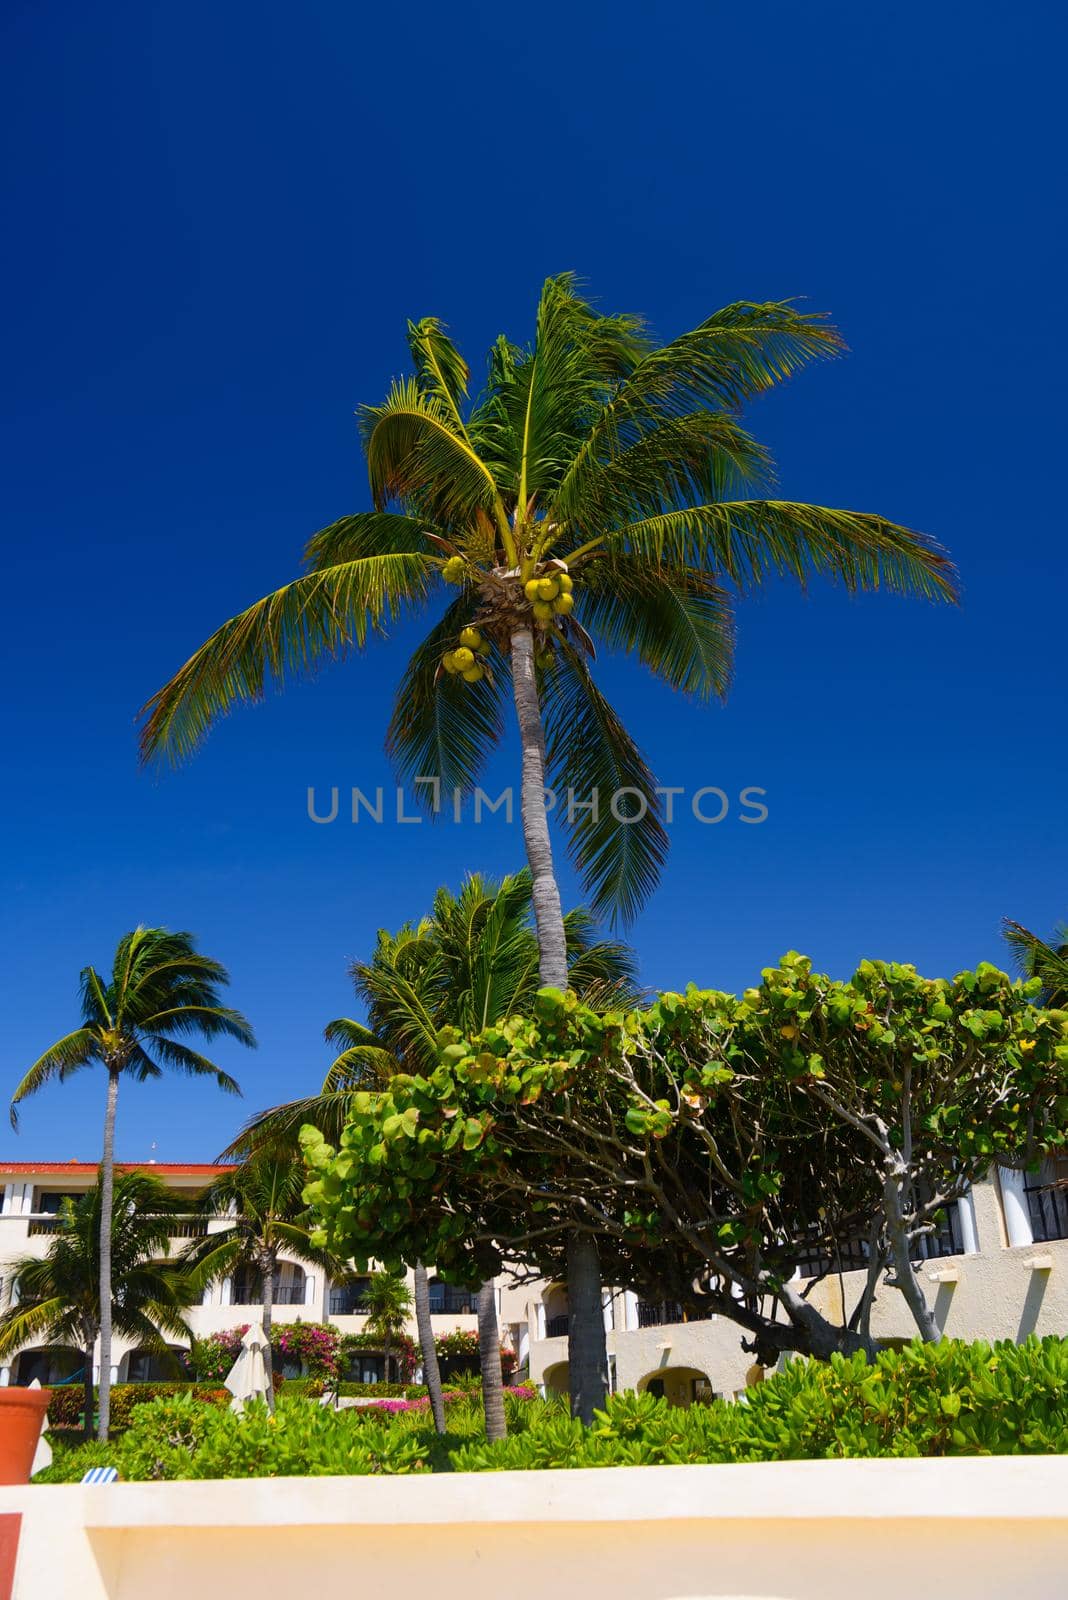 Cocos palm with cocos nuts in Playa del Carmen, Mexico.